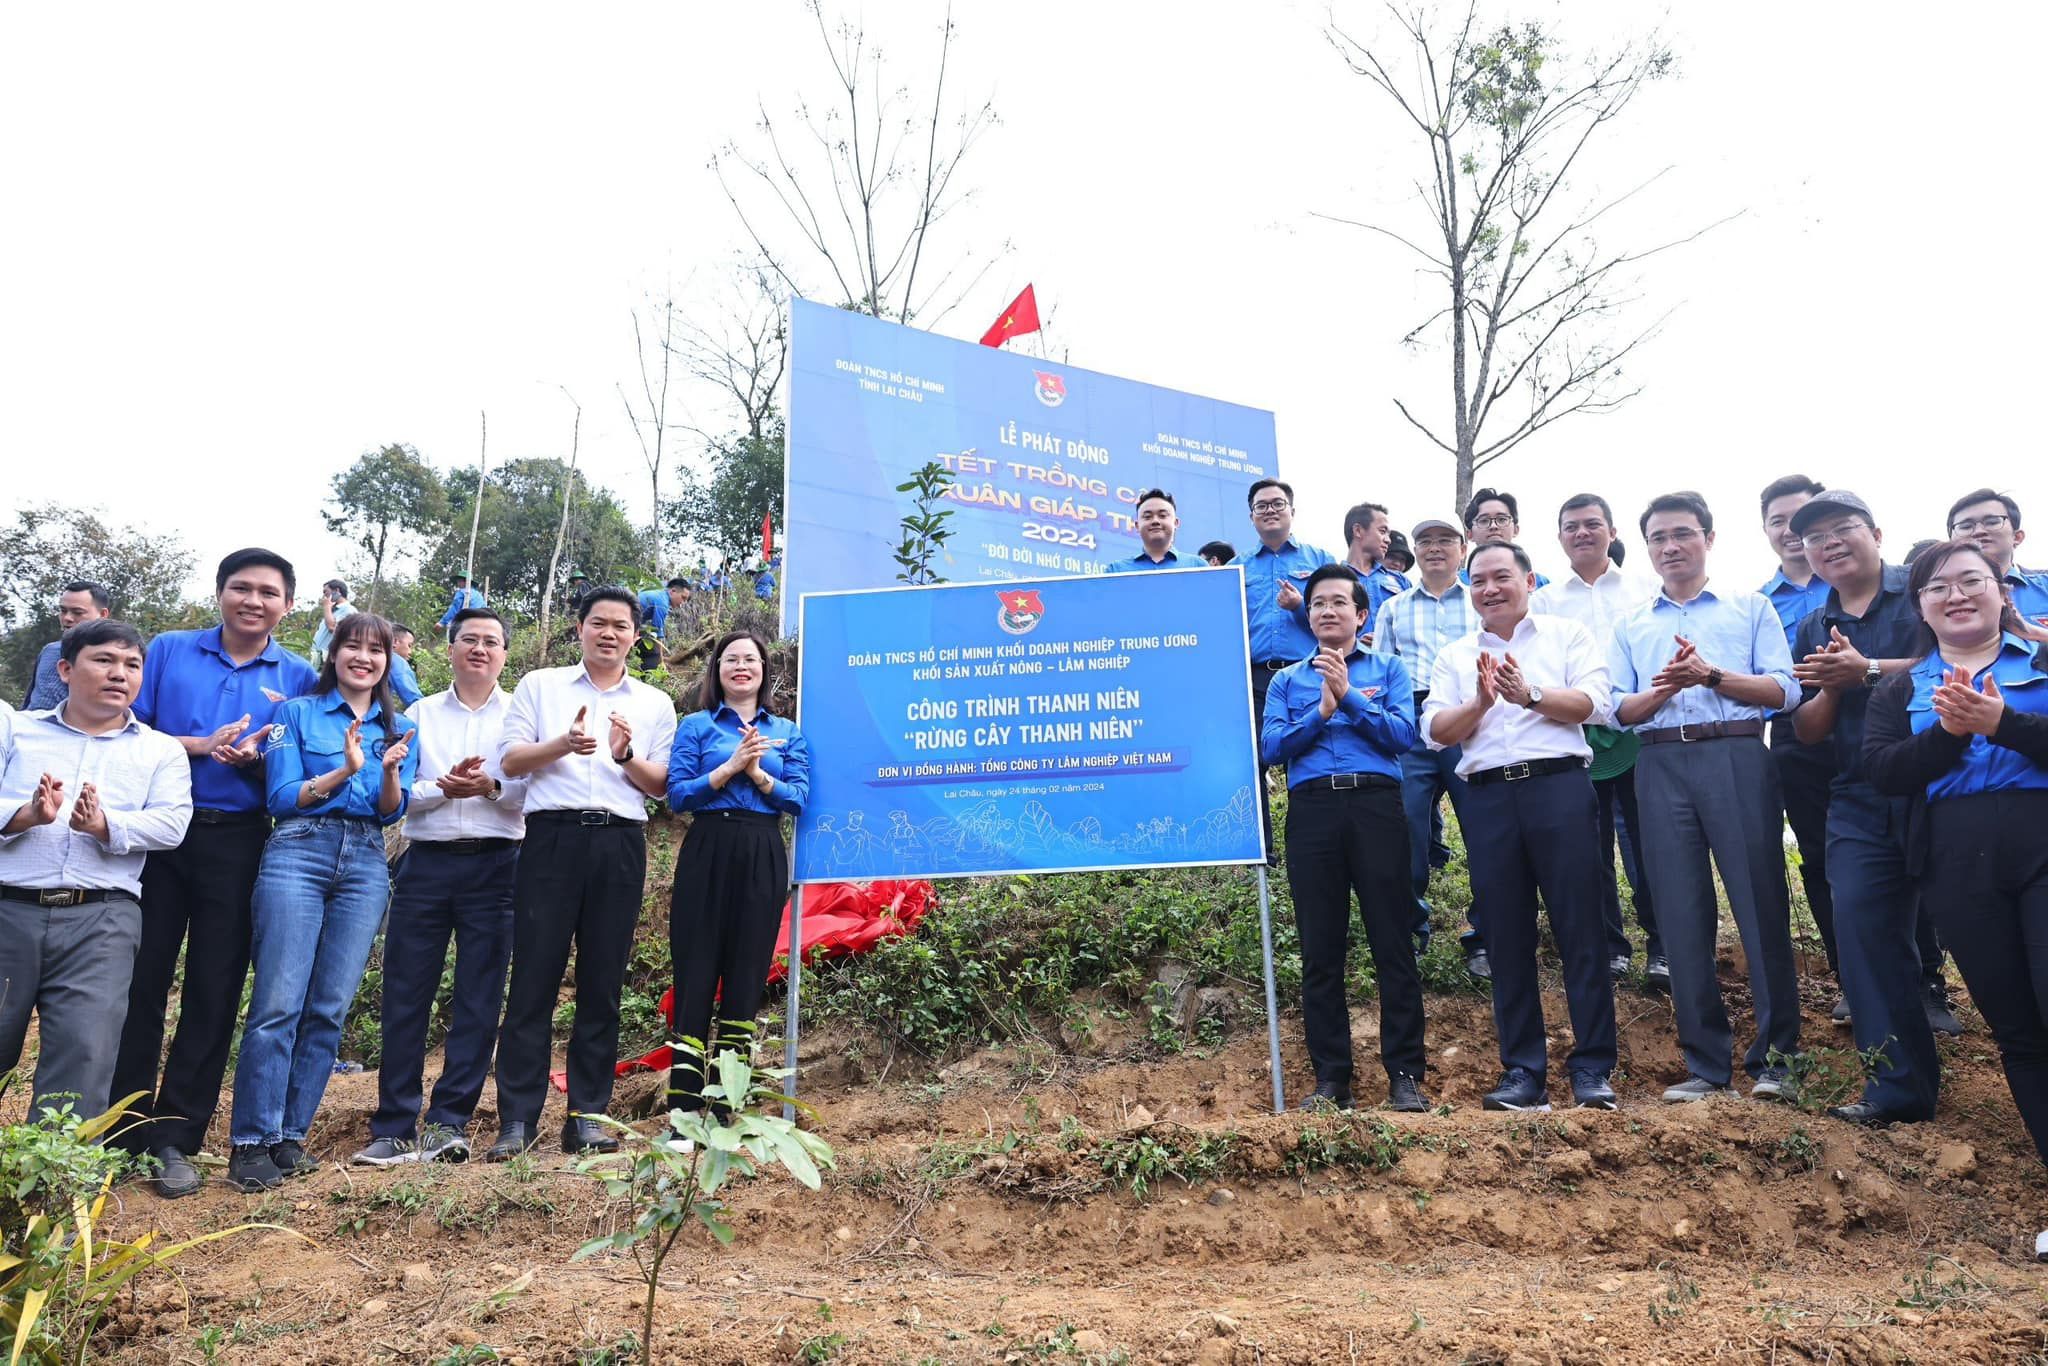 Trồng 10.000 cây xanh và gắn biển công trình rừng cây thanh niên ở Lai Châu